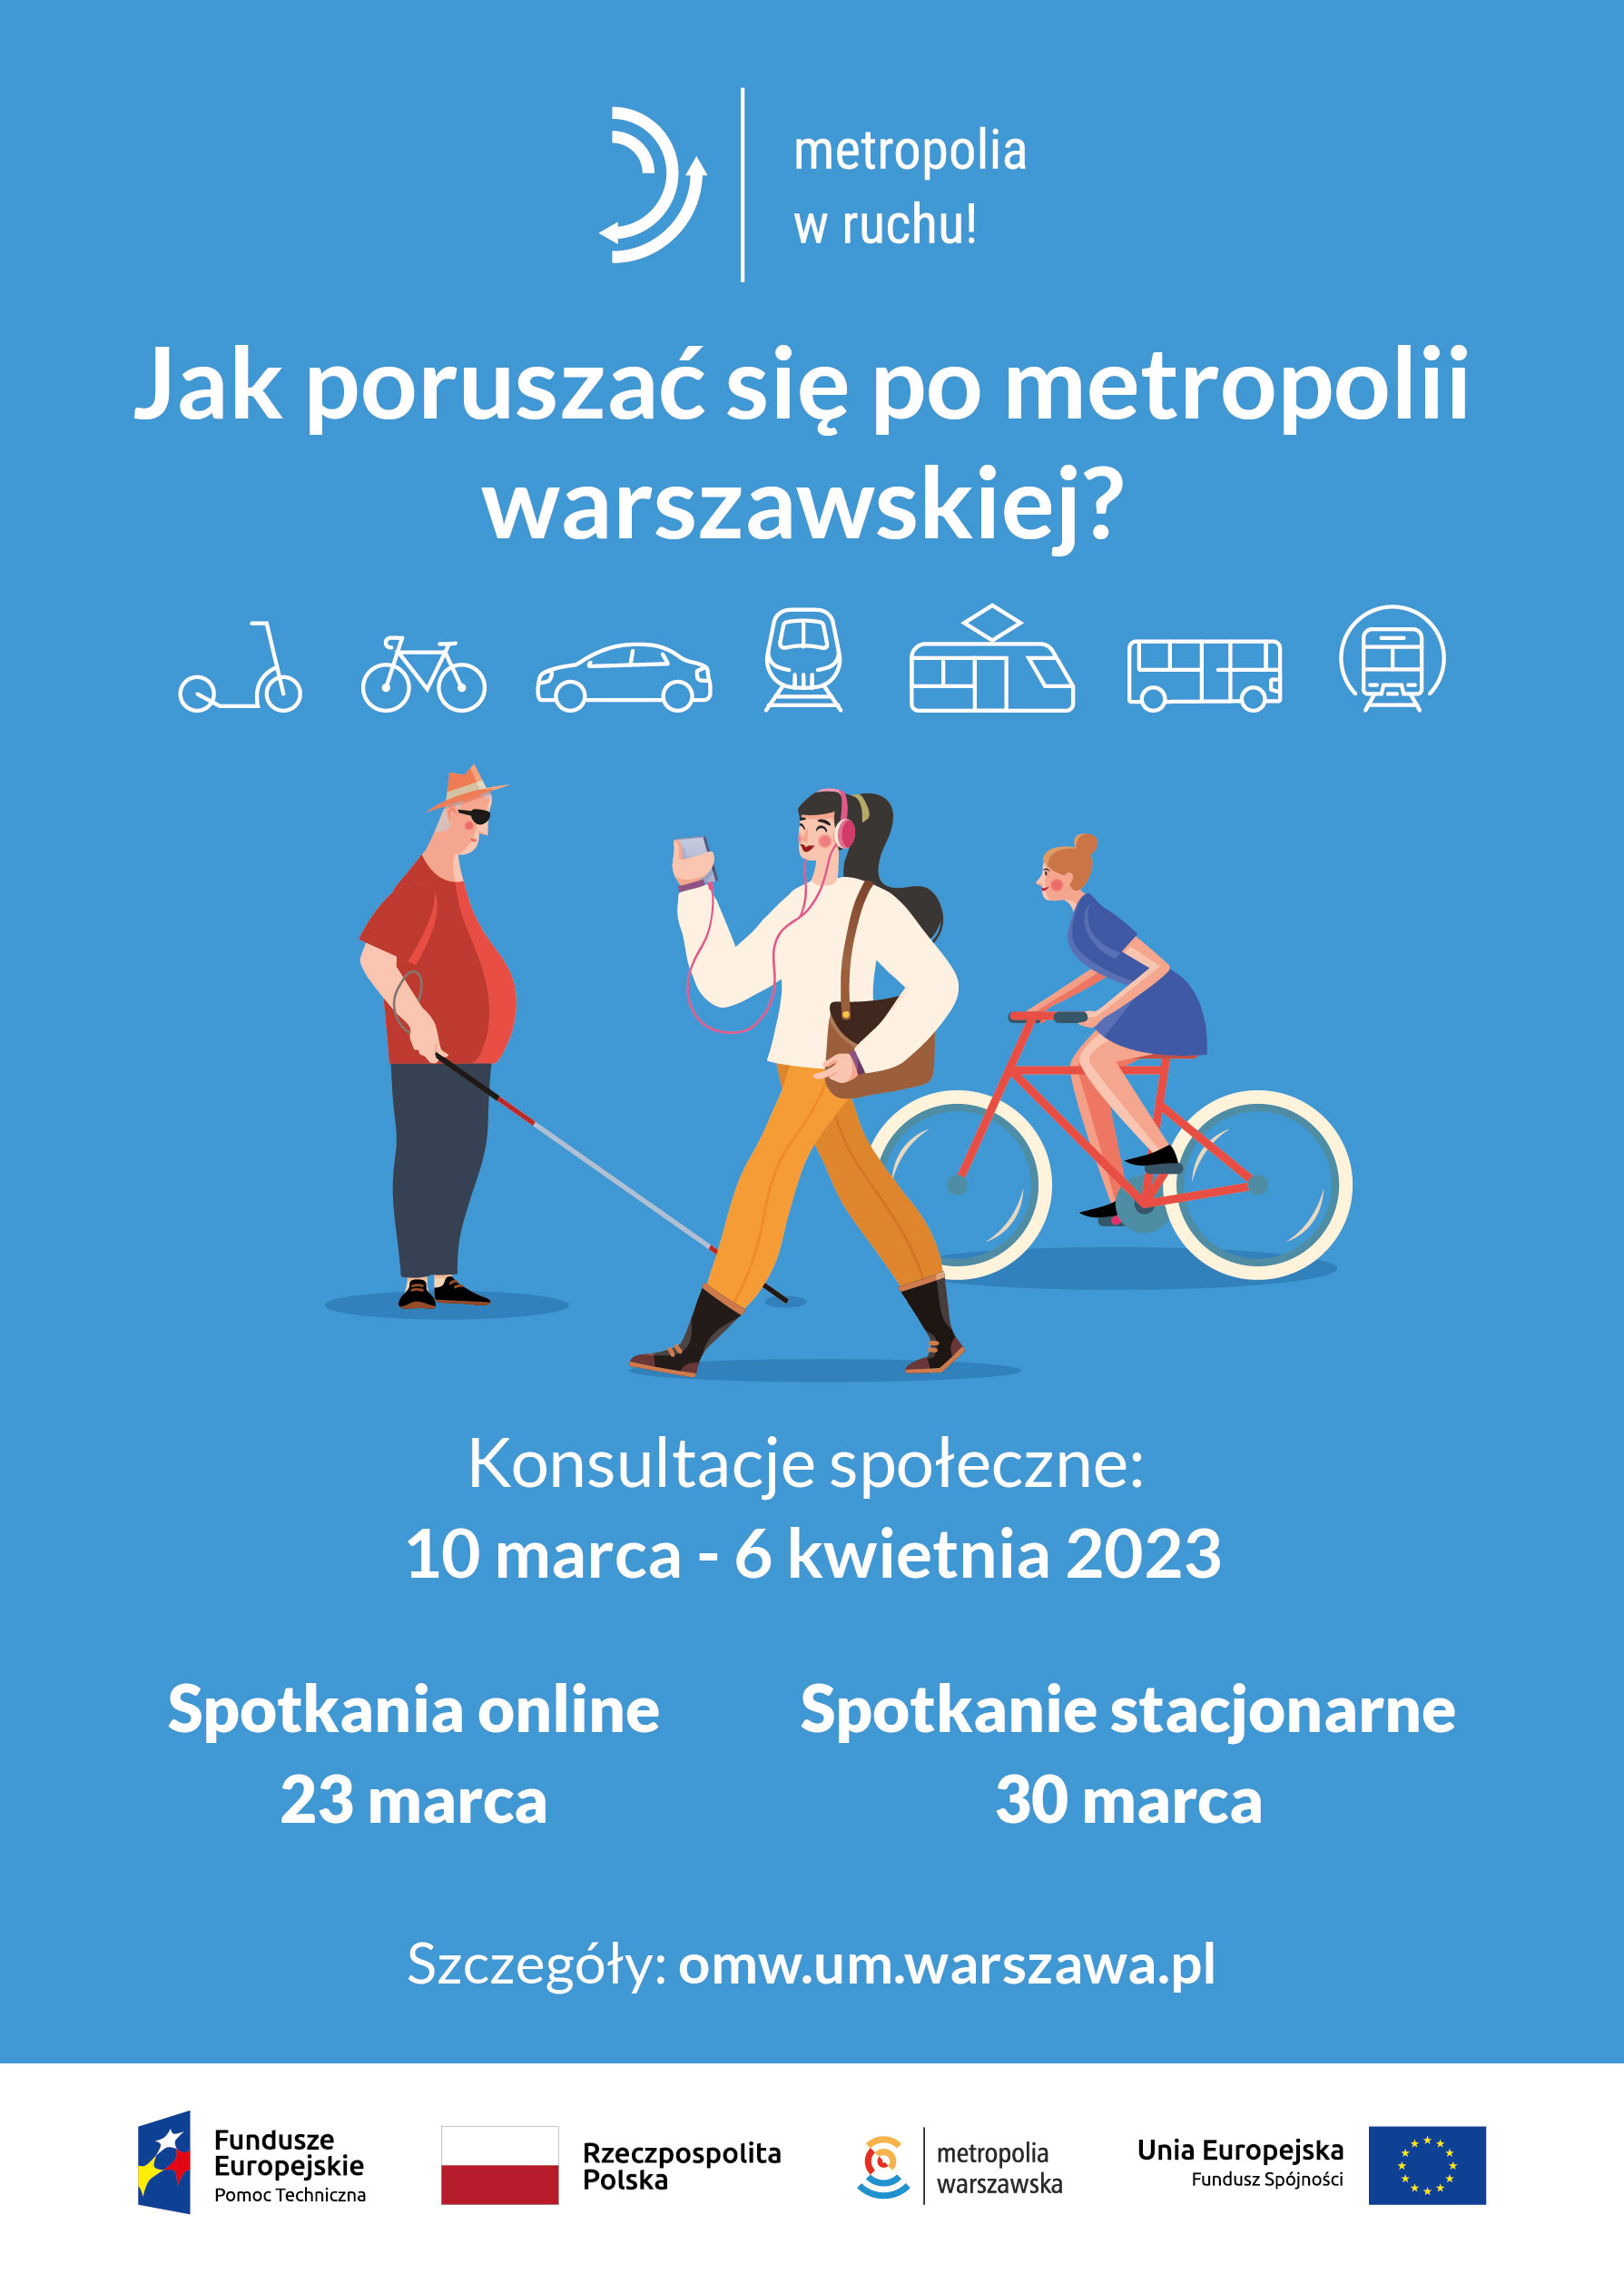 Przygotowaliśmy Plan Zrównoważonej Mobilności Miejskiej dla metropolii warszawskiej